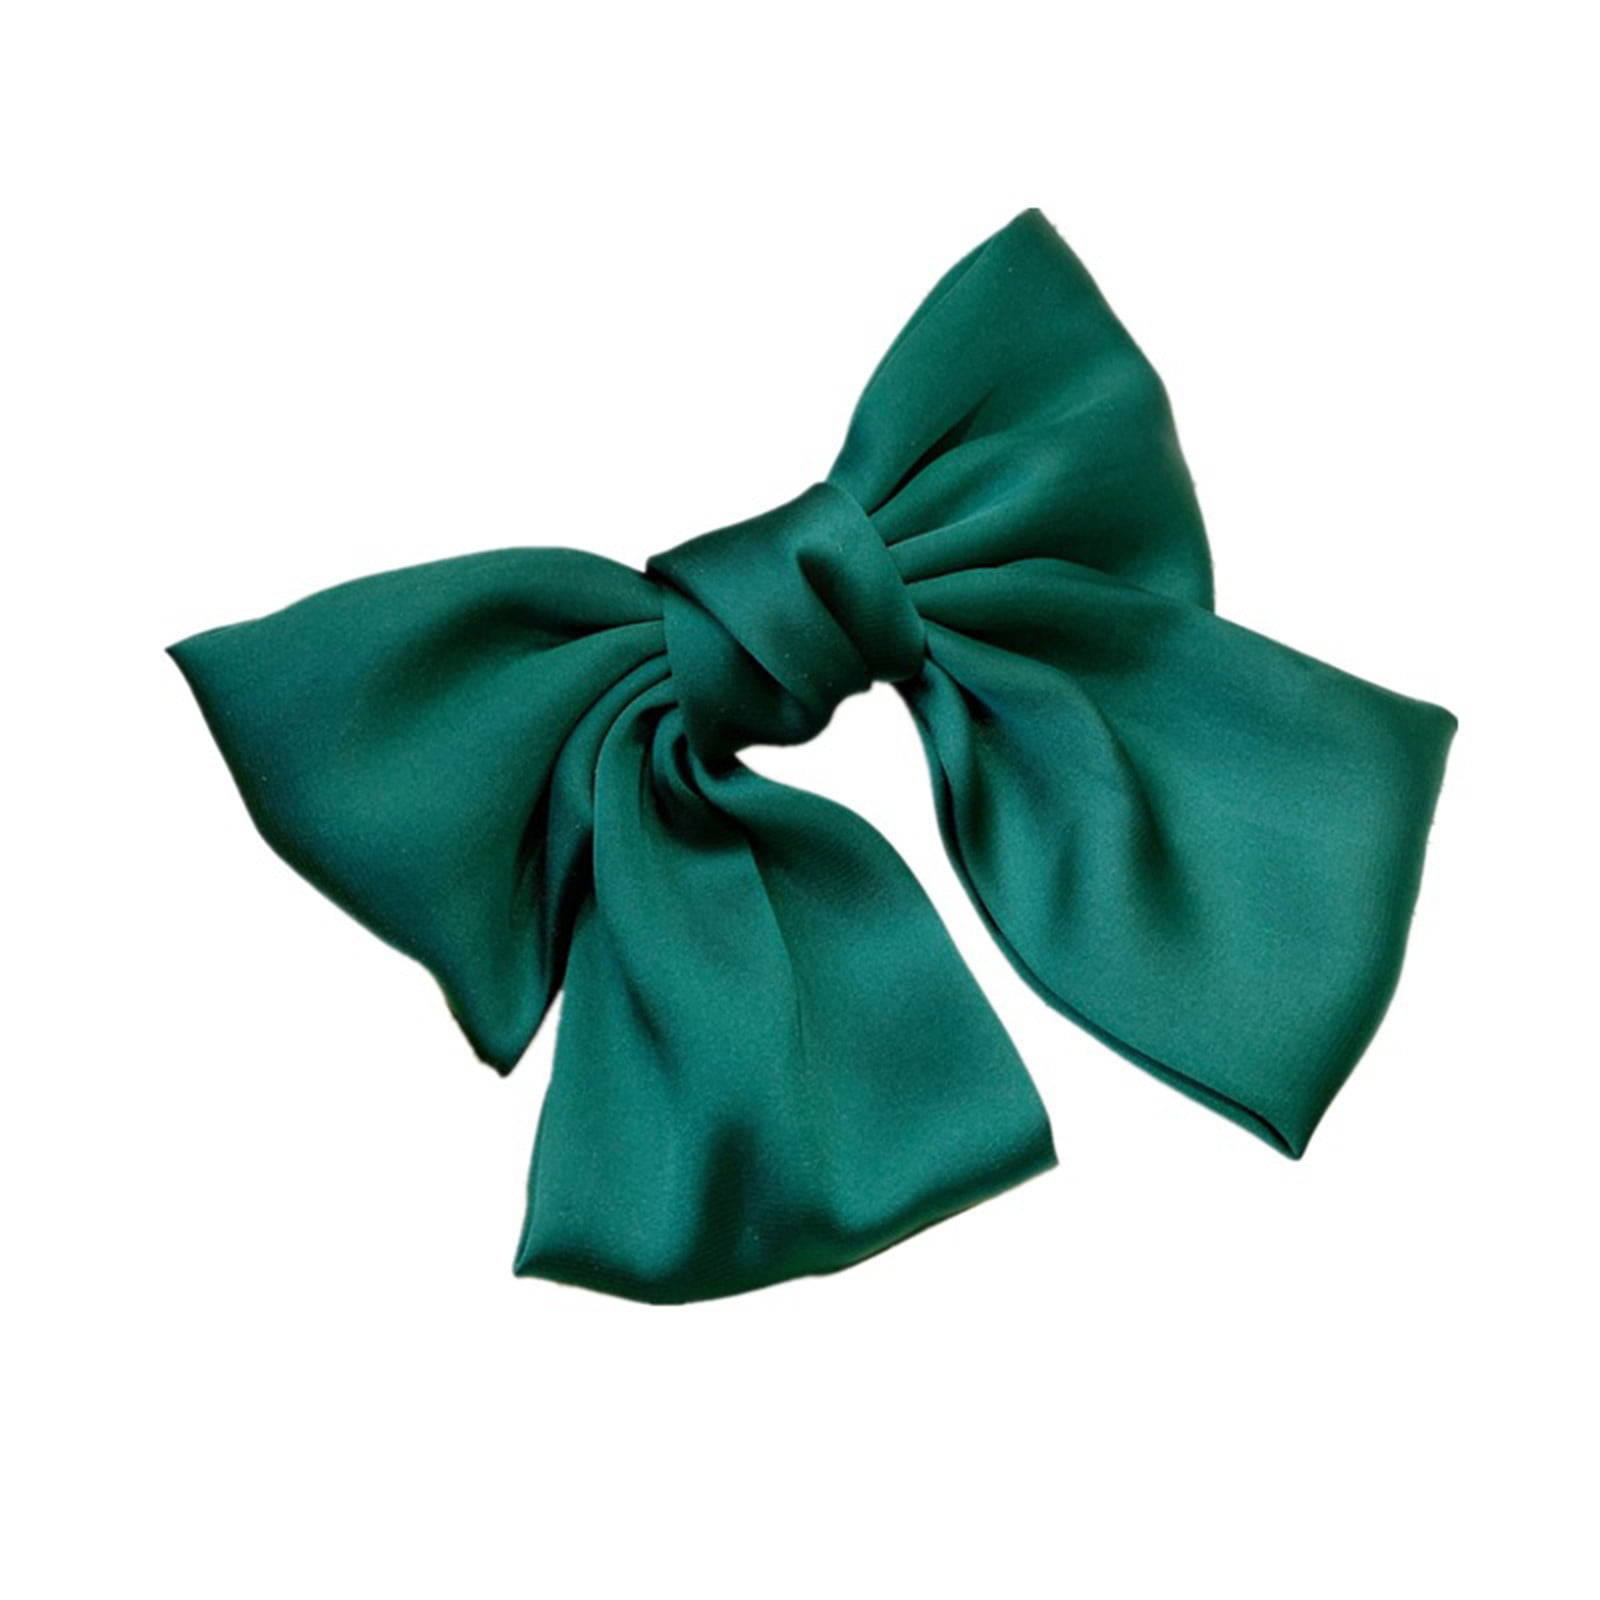 Green glitter hair bows thick hair bobbles Christmas hair accessories/bows 